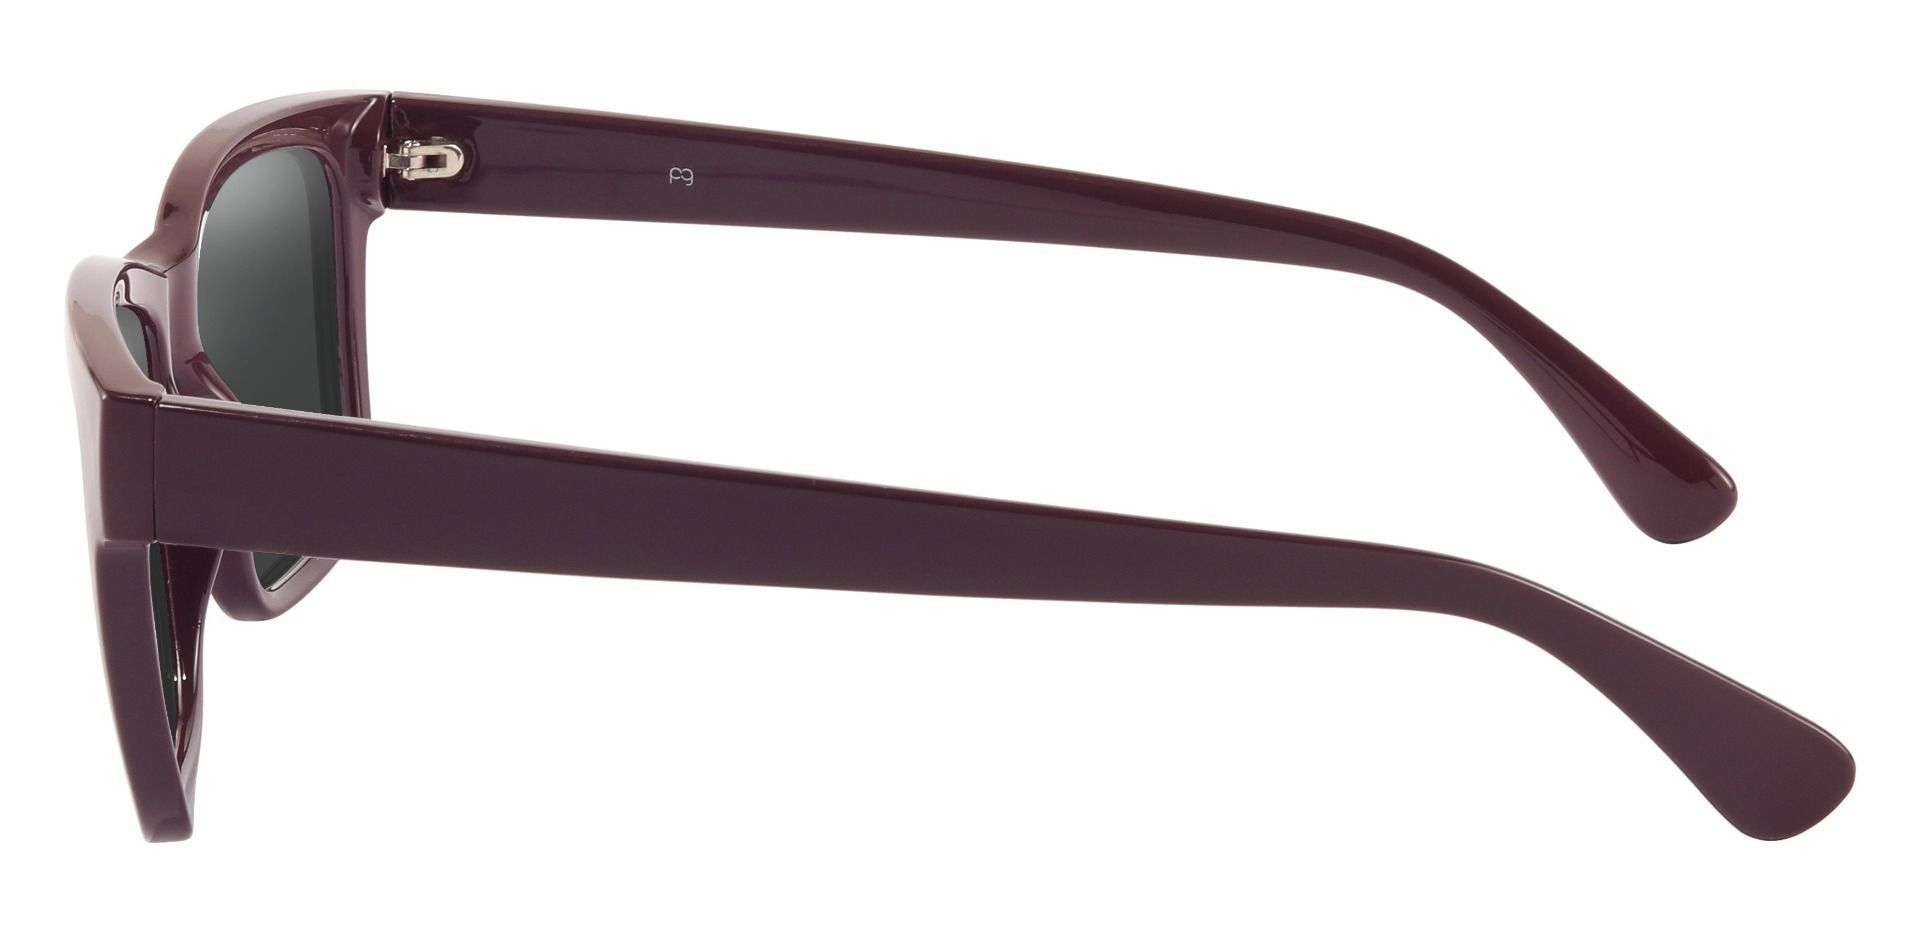 Brinley Square Progressive Sunglasses - Purple Frame With Gray Lenses